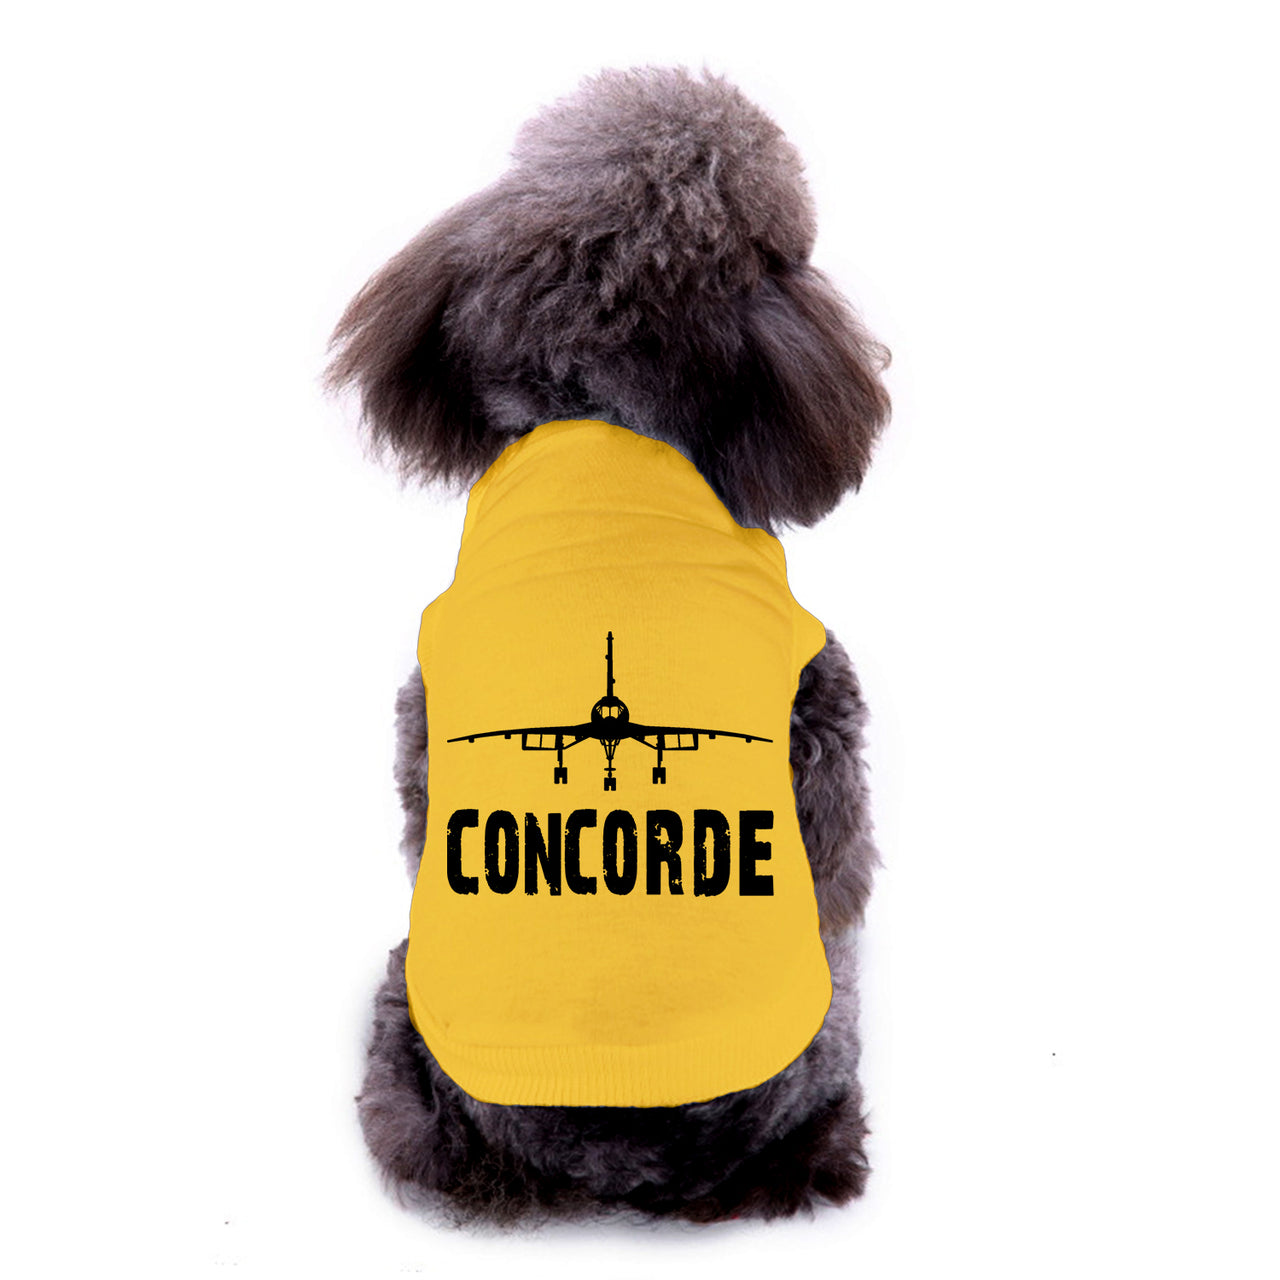 Concorde & Plane Designed Dog Pet Vests